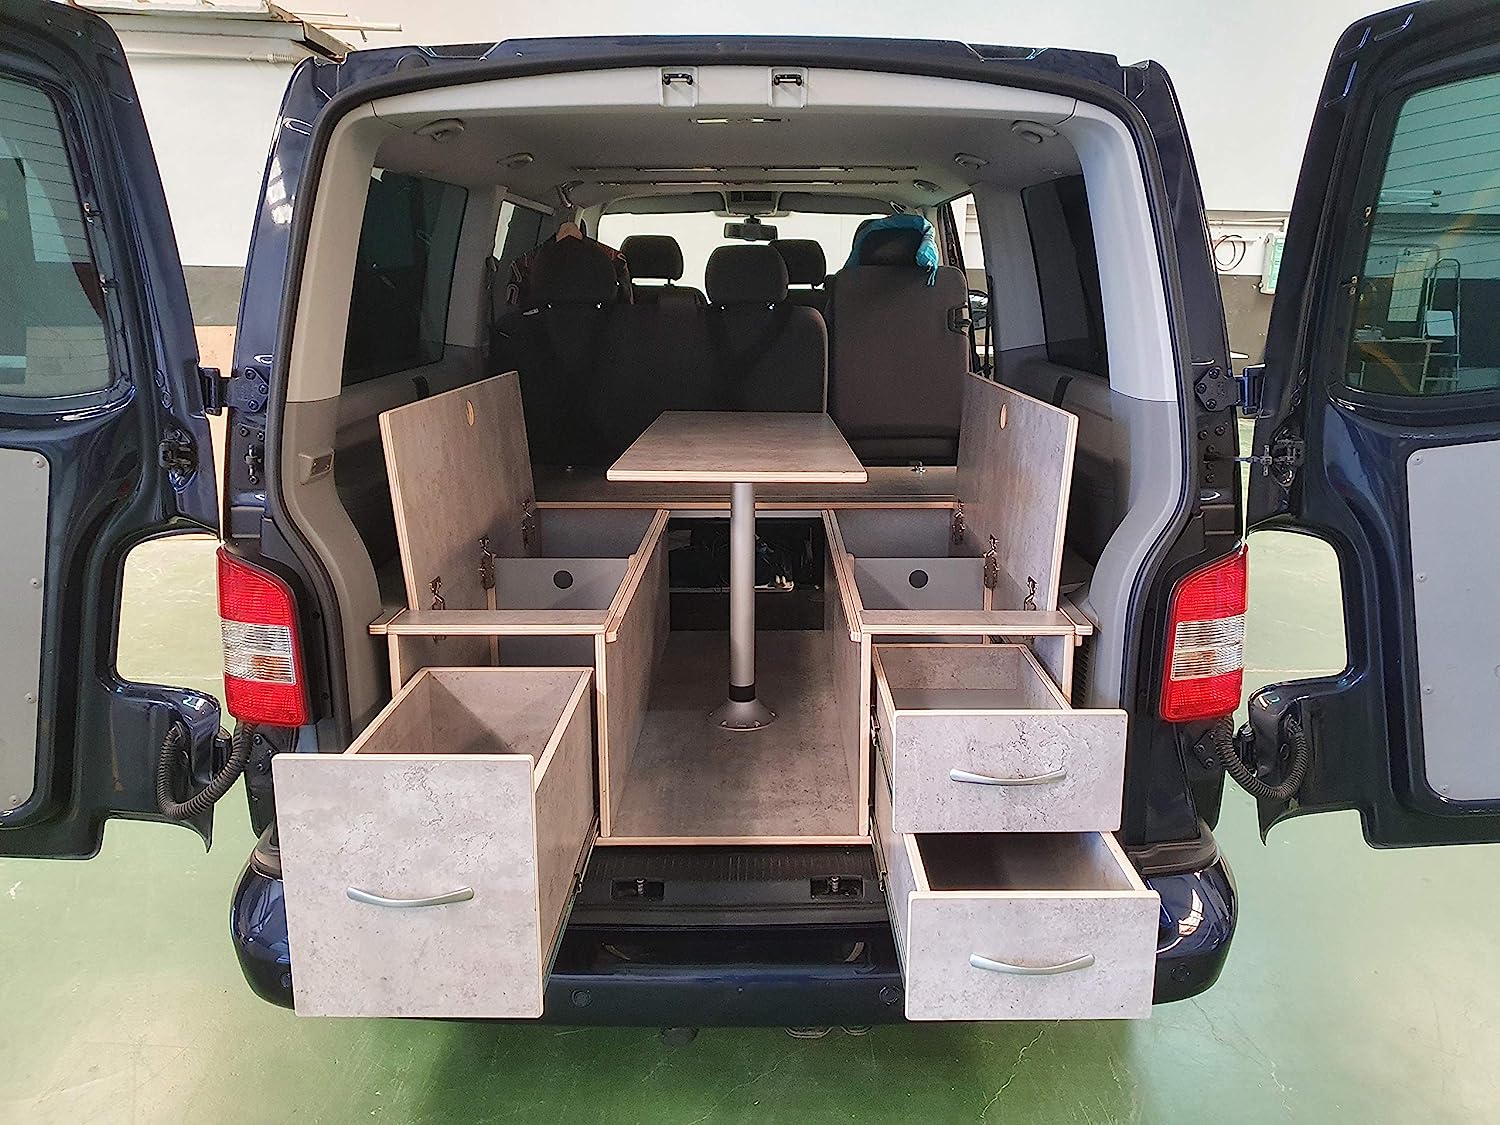 Mueble lateral camper: ¿Es compatible con diferentes modelos y marcas de furgonetas?